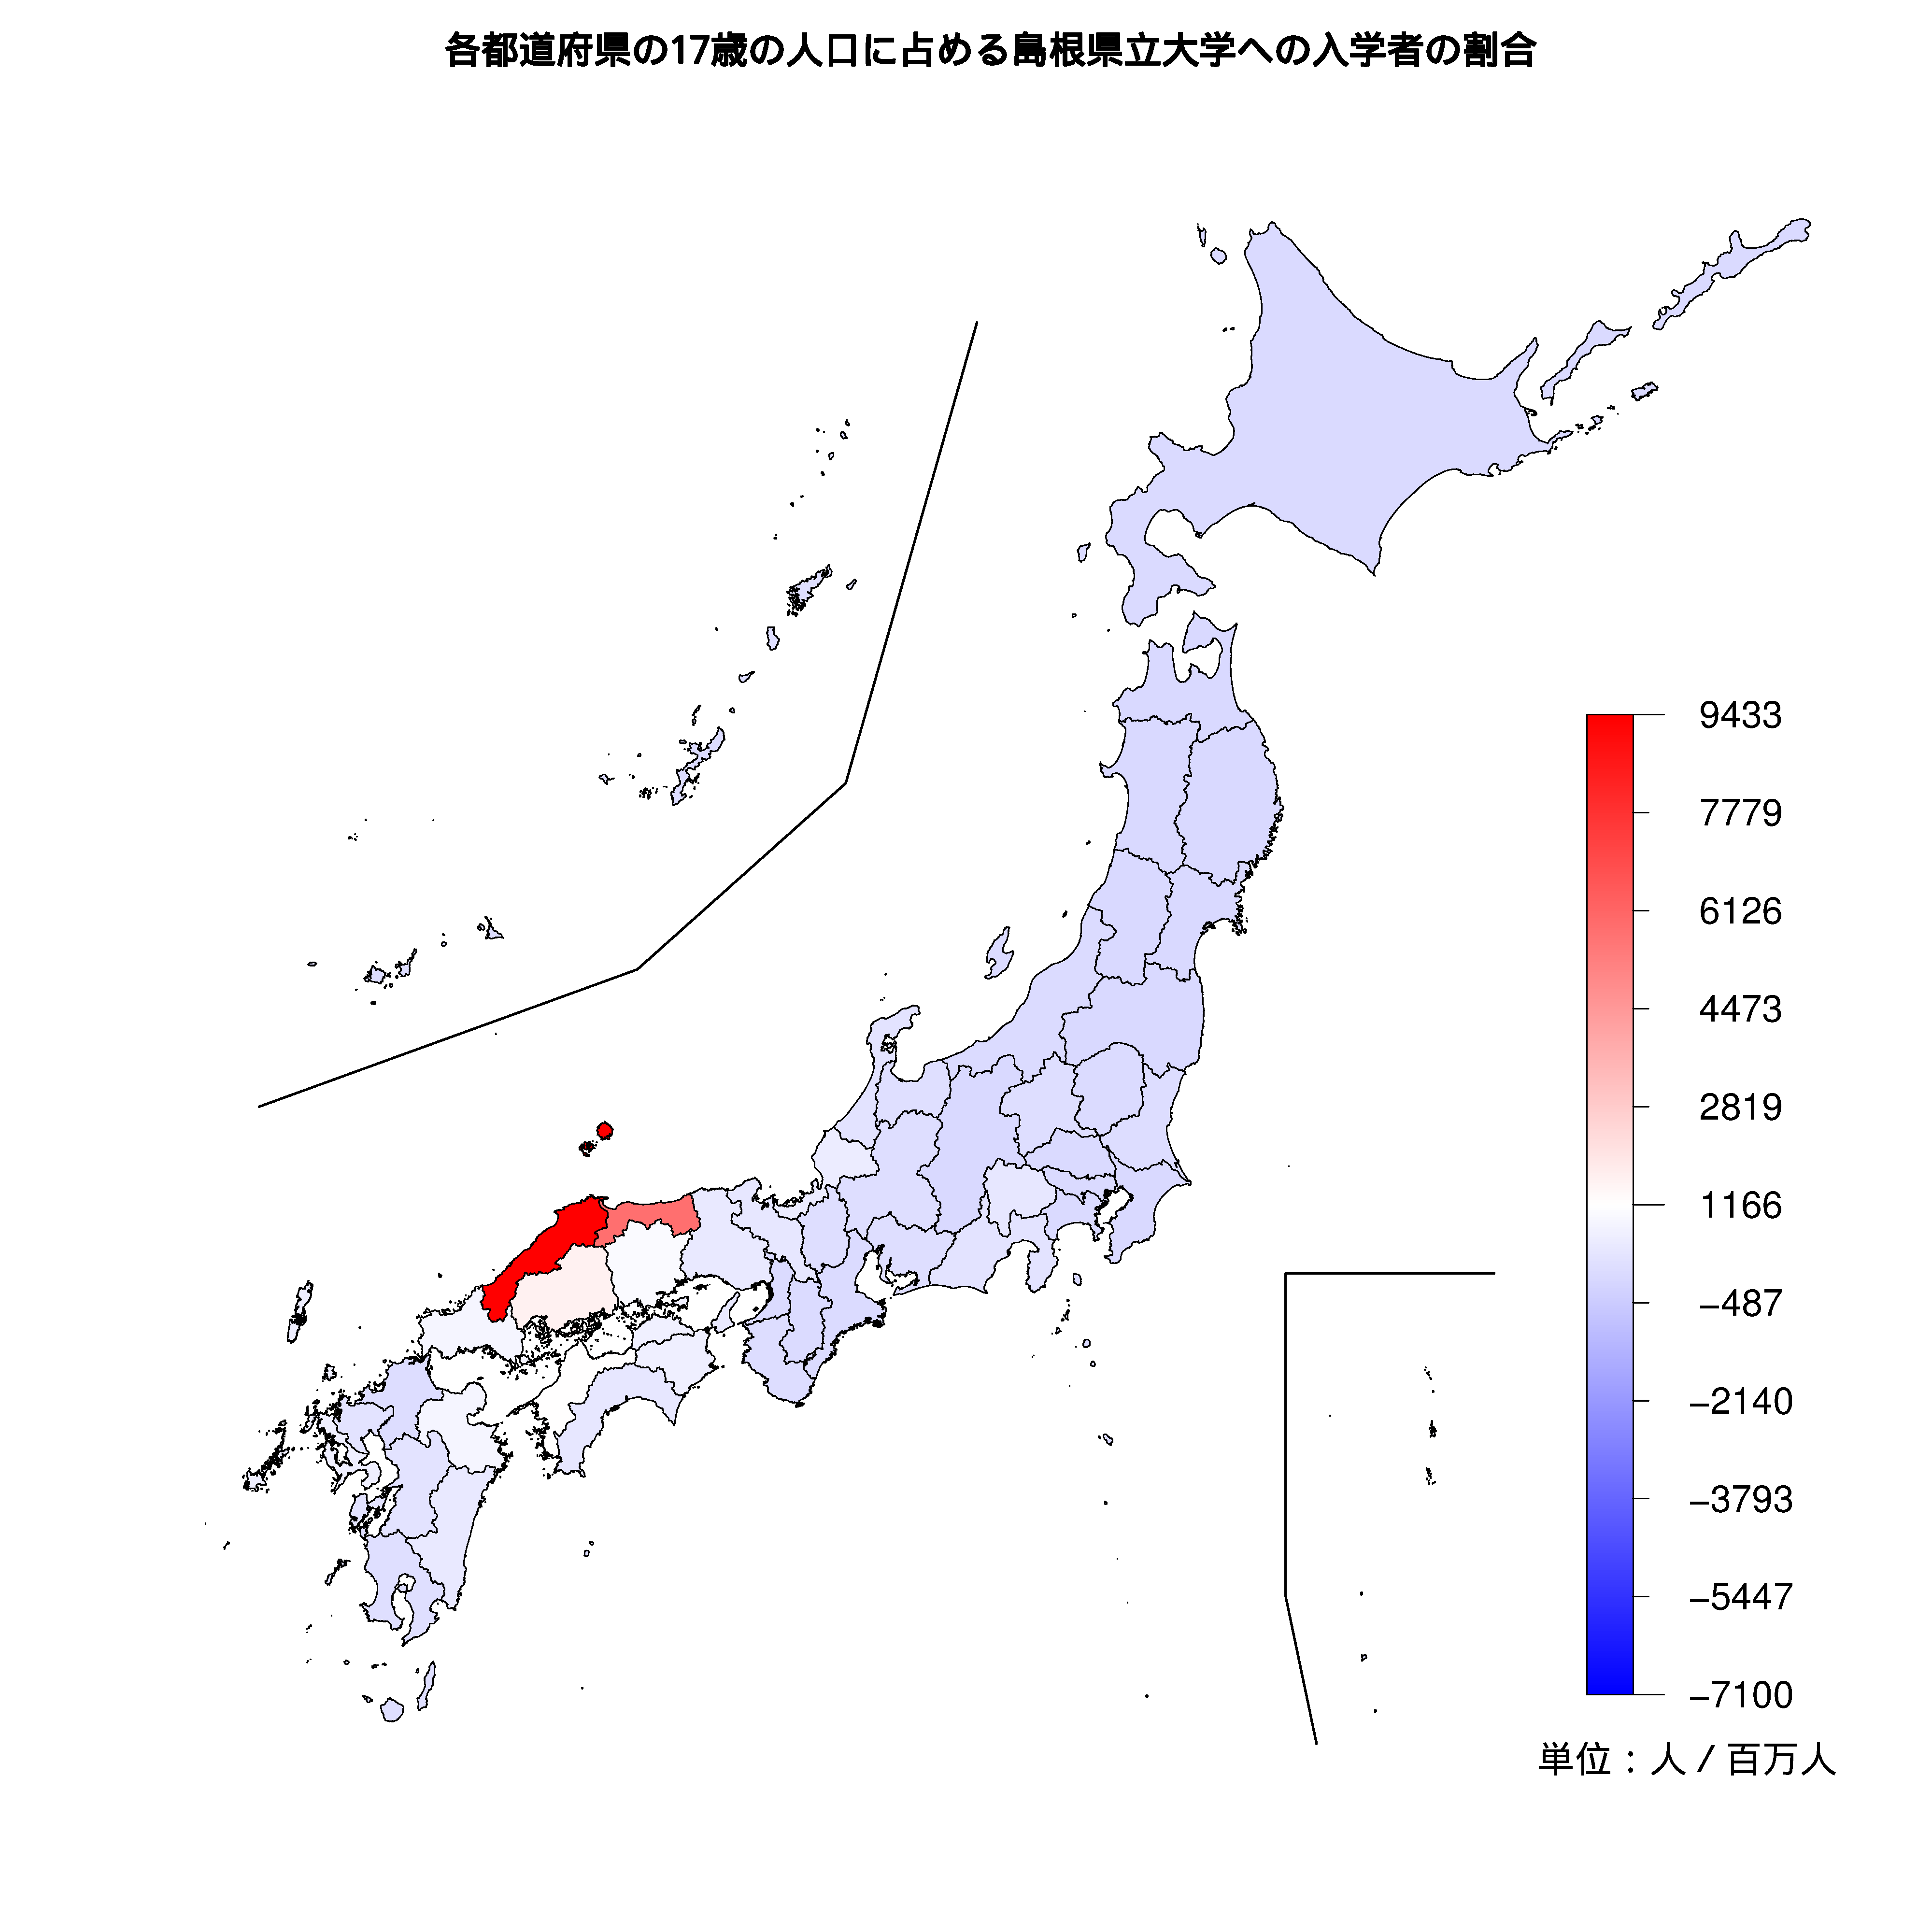 島根県立大学への入学者が多い都道府県の色分け地図